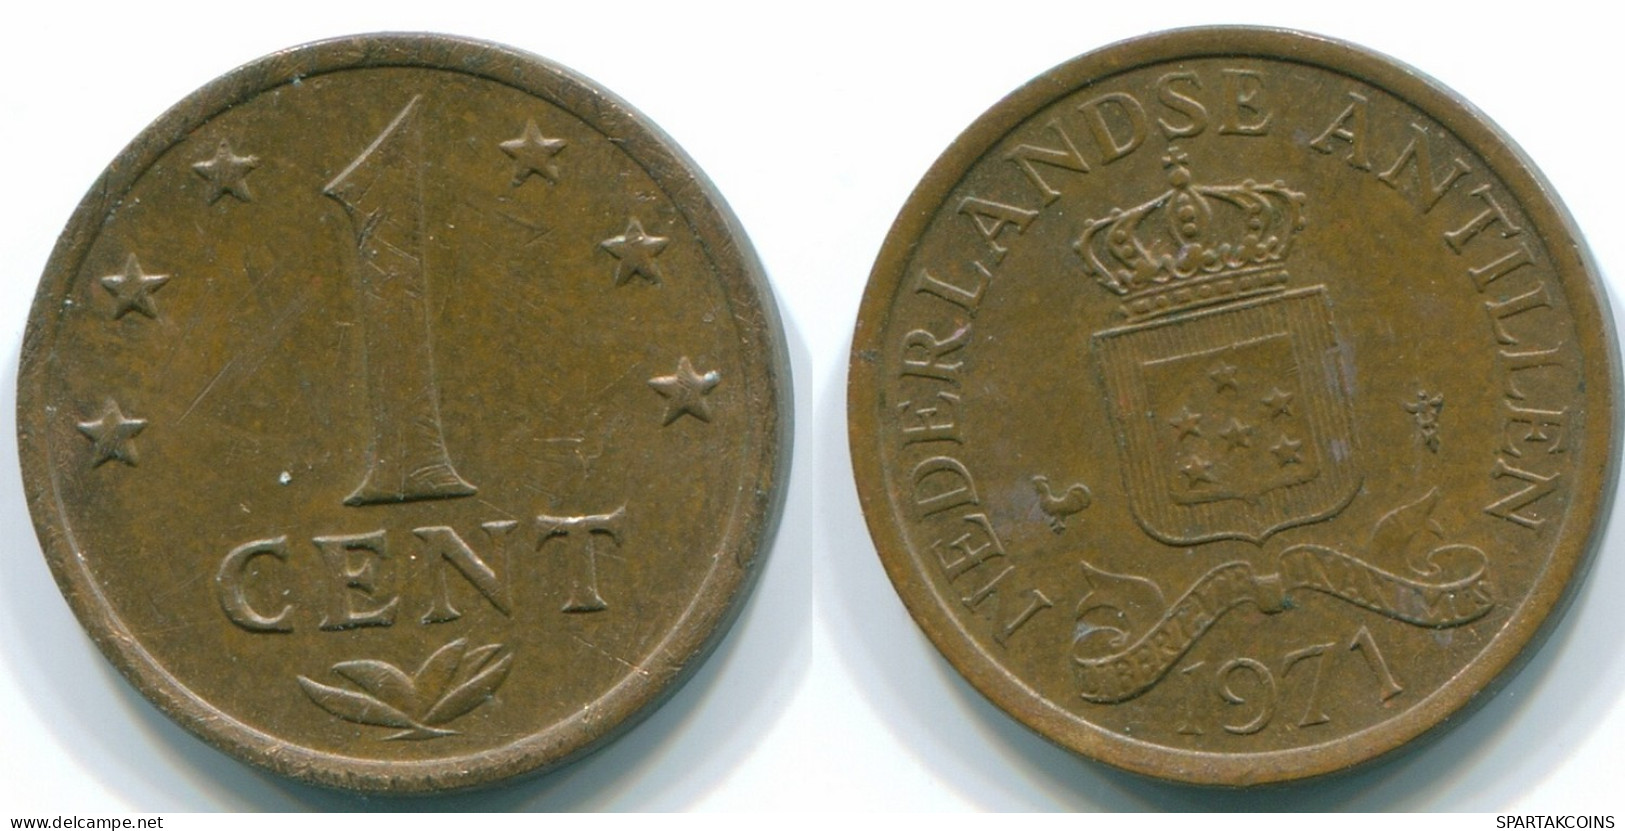 1 CENT 1971 ANTILLAS NEERLANDESAS Bronze Colonial Moneda #S10621.E.A - Antilles Néerlandaises